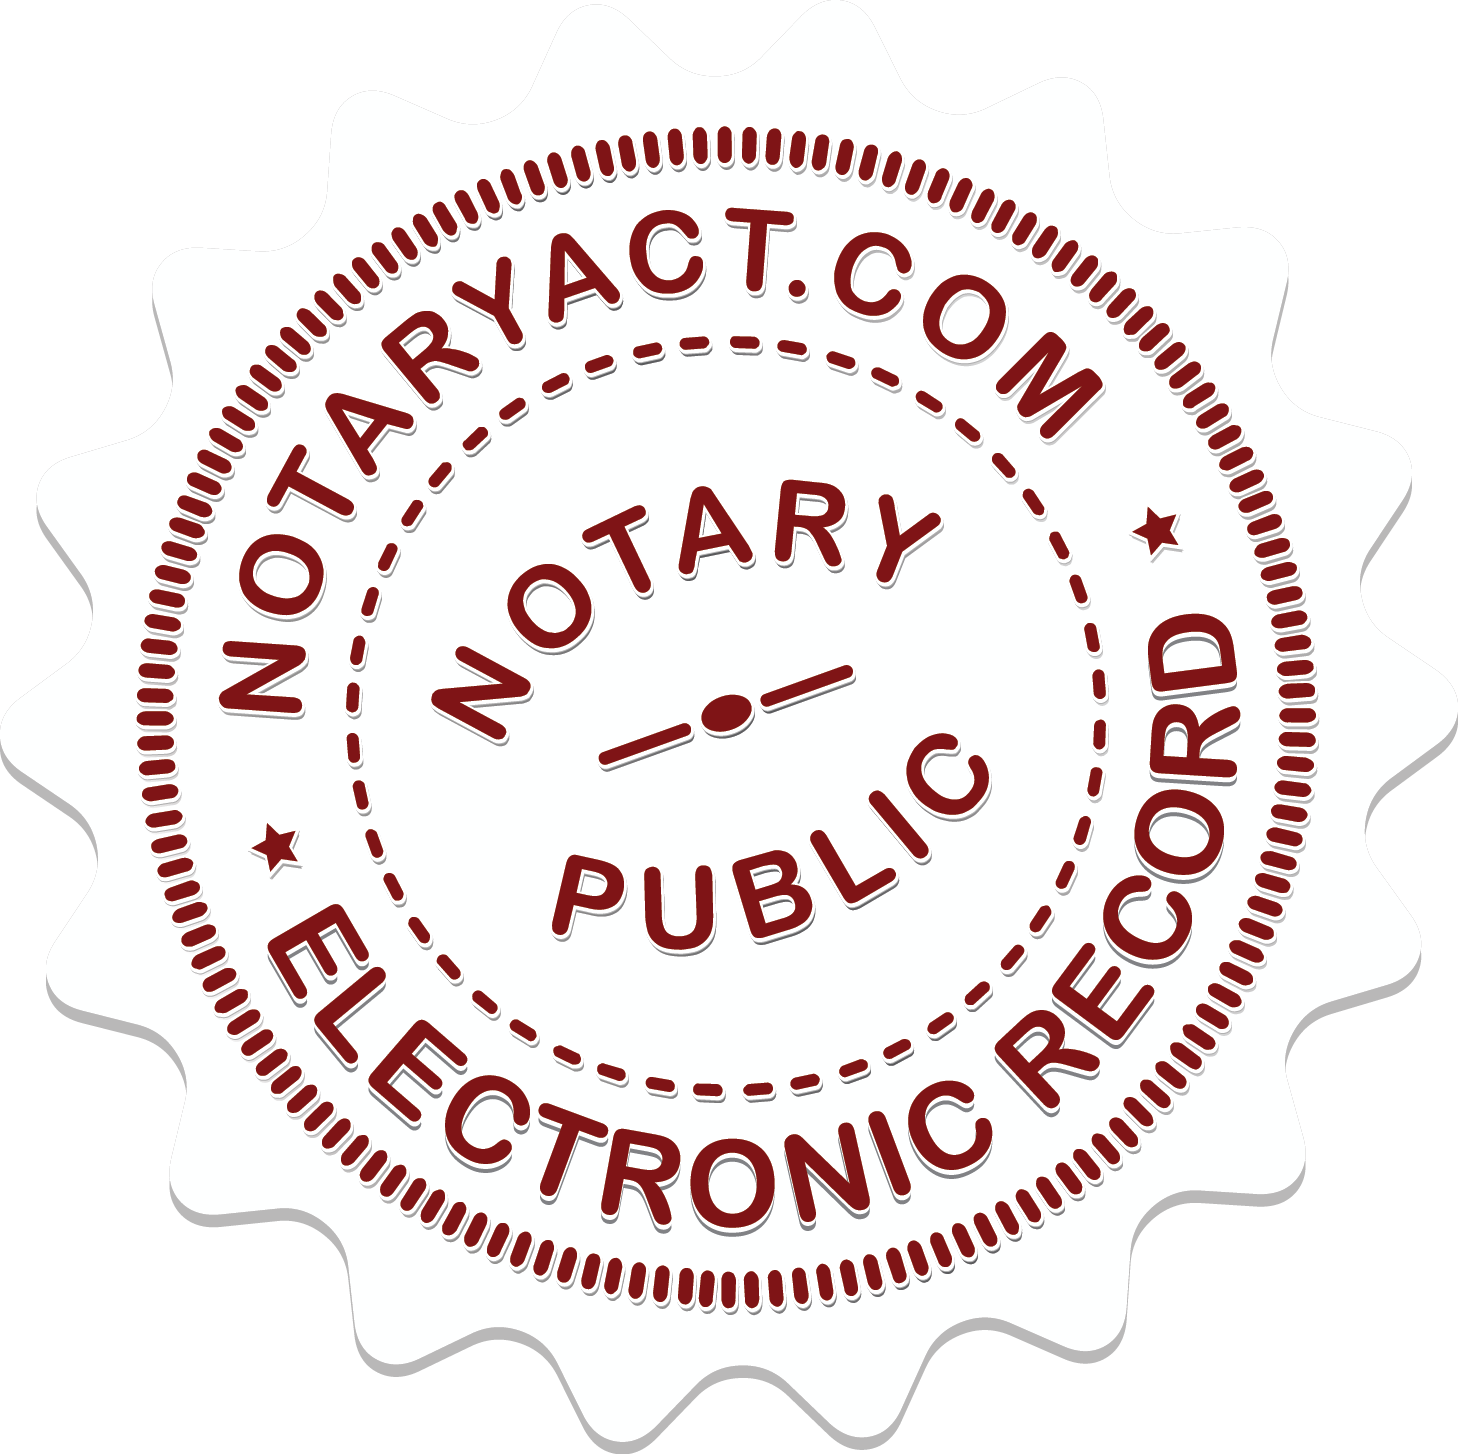 Notaryact logo